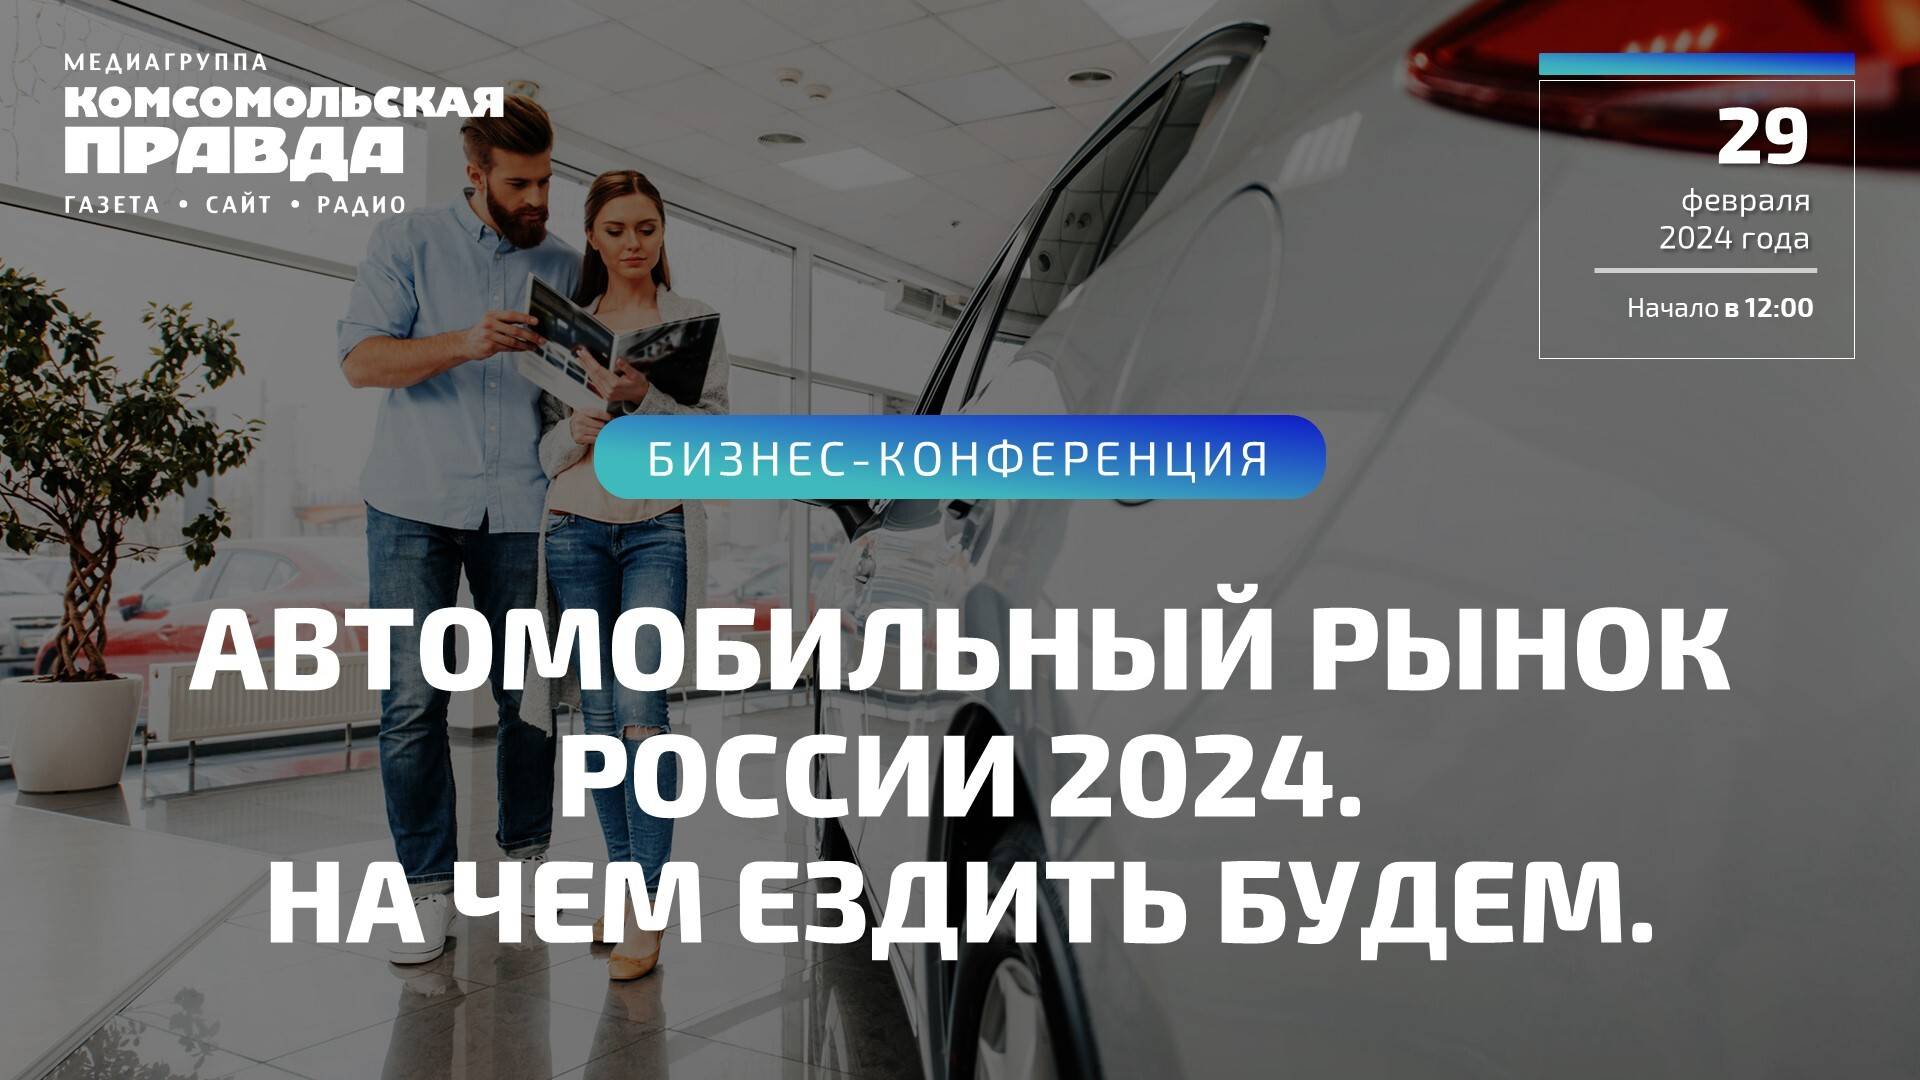 Автомобильный рынок России 2024. На чем ездить будем?